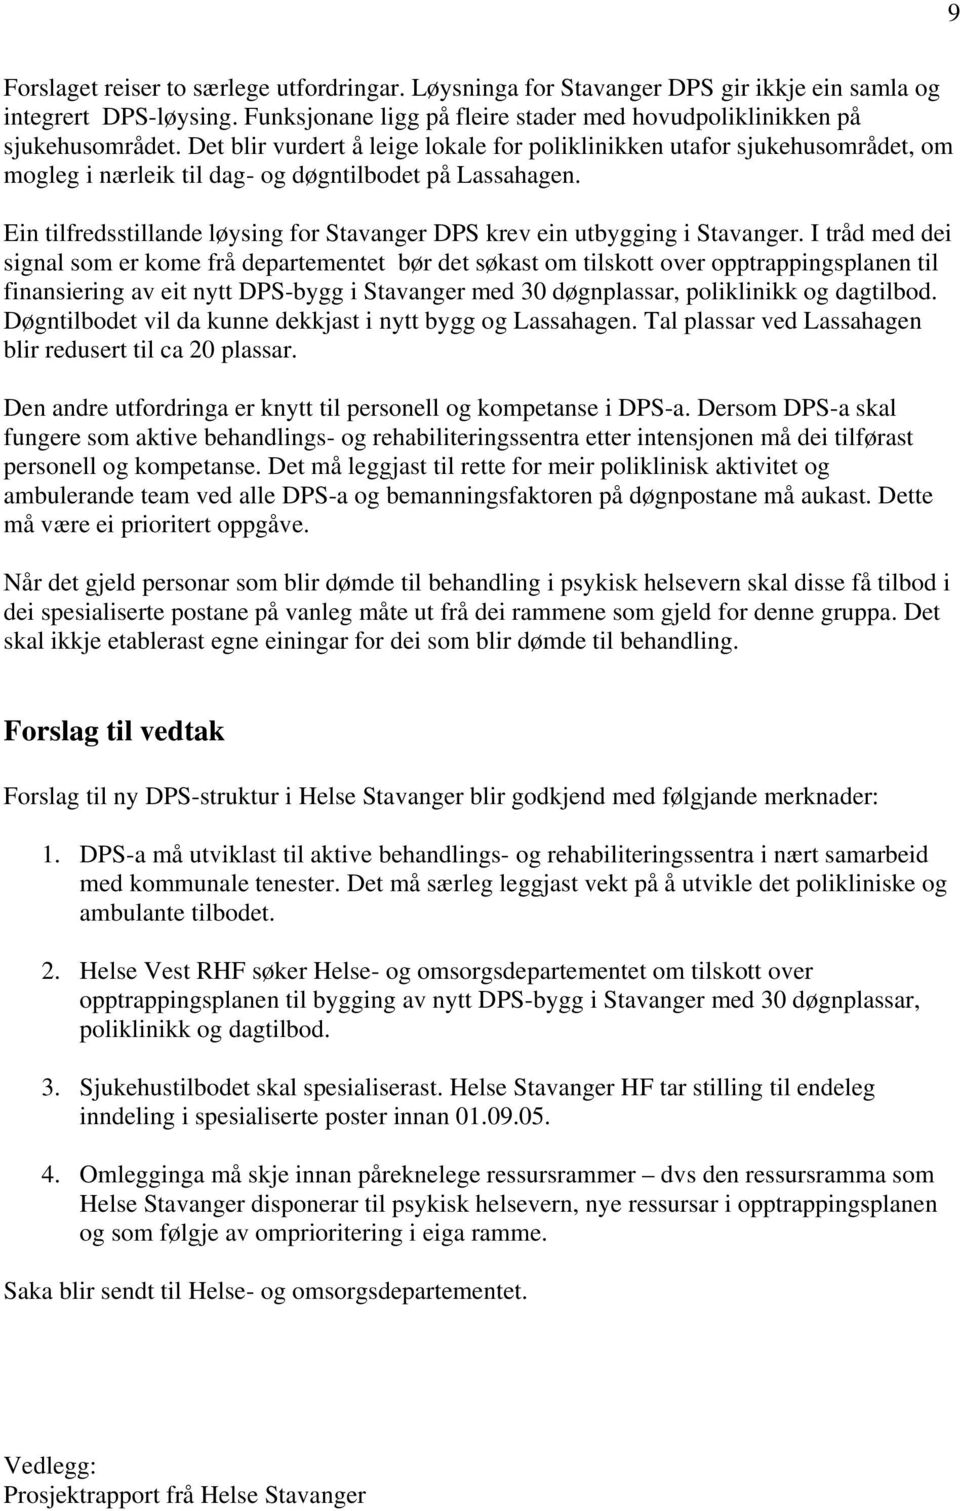 Ein tilfredsstillande løysing for Stavanger DPS krev ein utbygging i Stavanger.